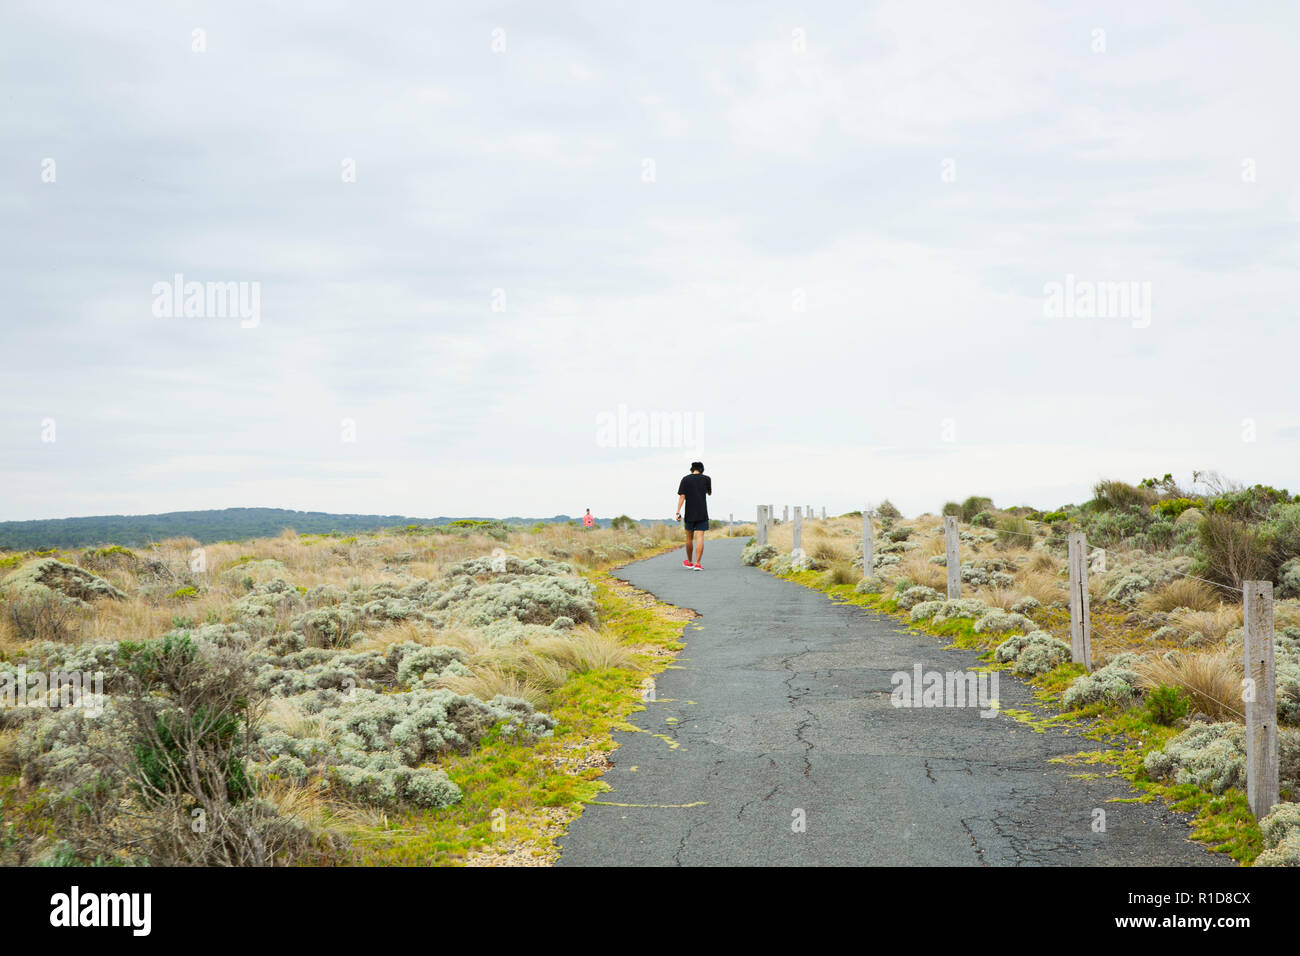 Homme seul s'exécutant sur un chemin vide, loin de l'appareil photo. Banque D'Images